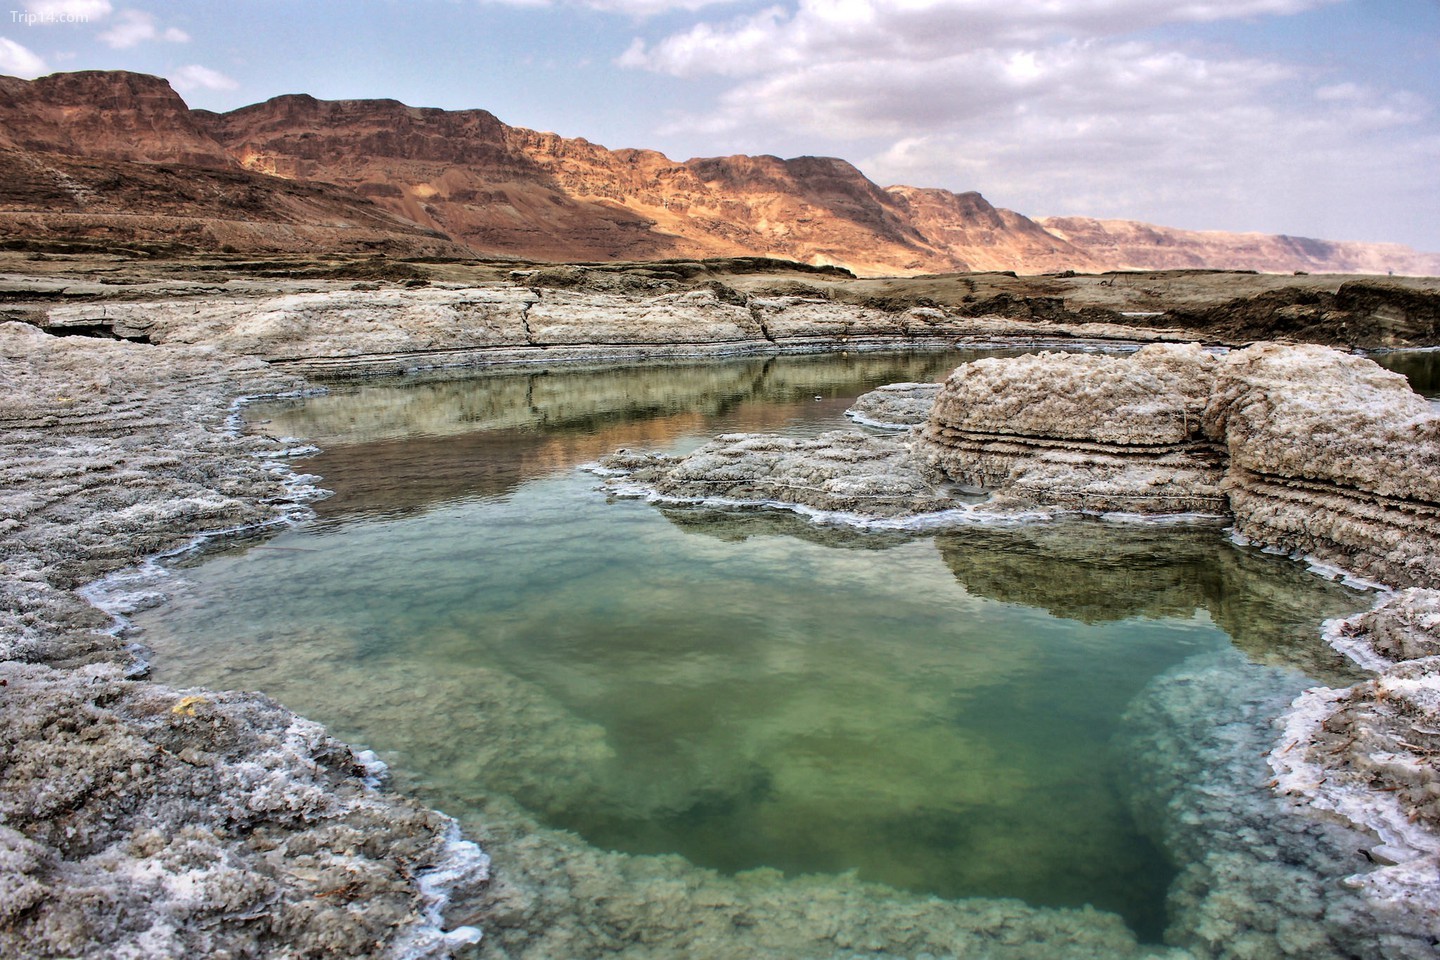  Biển Chết đang bị thu hẹp nhanh chóng   |   